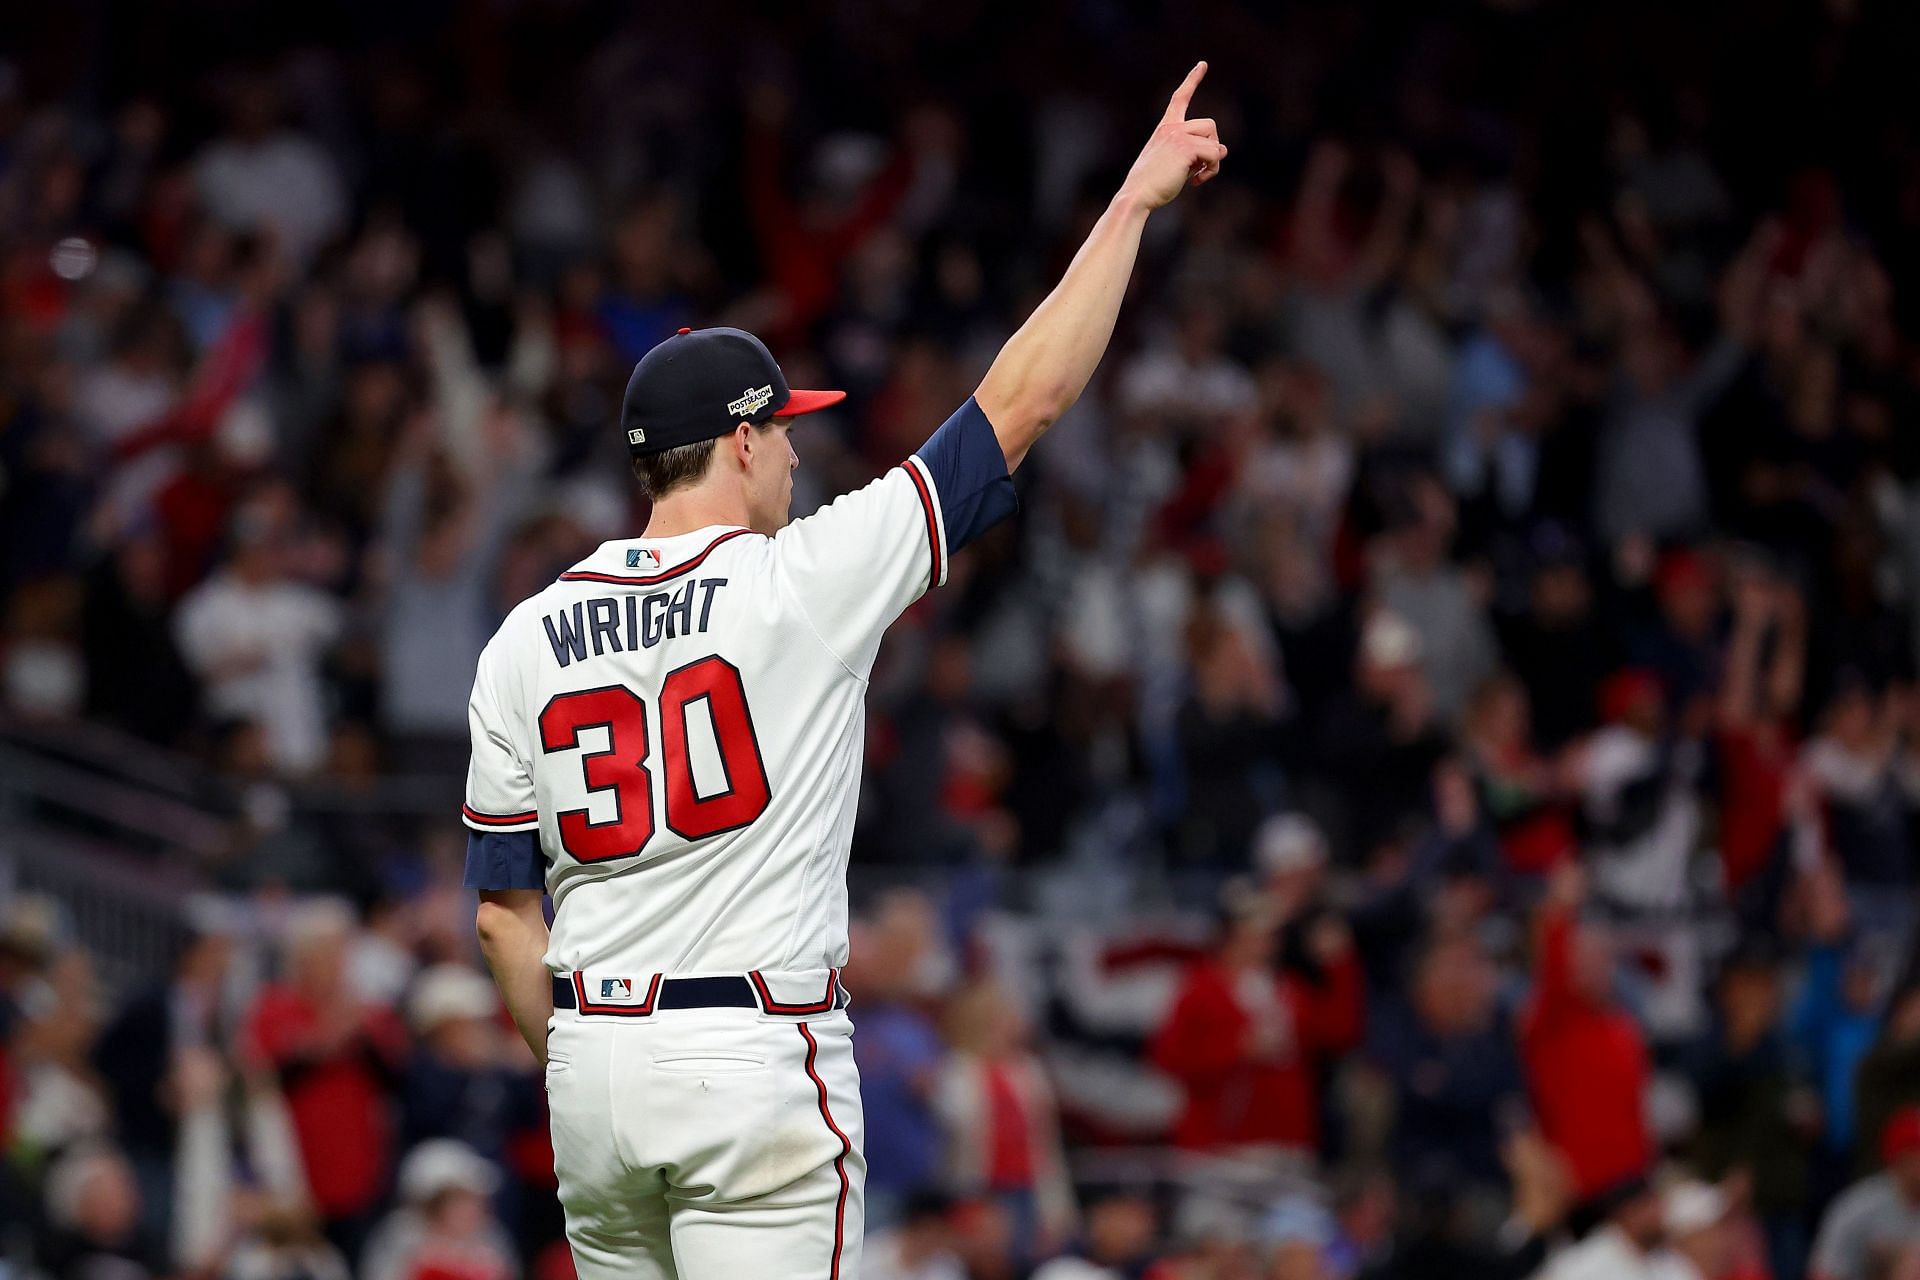 Kyle Wright - MLB News, Rumors, & Updates